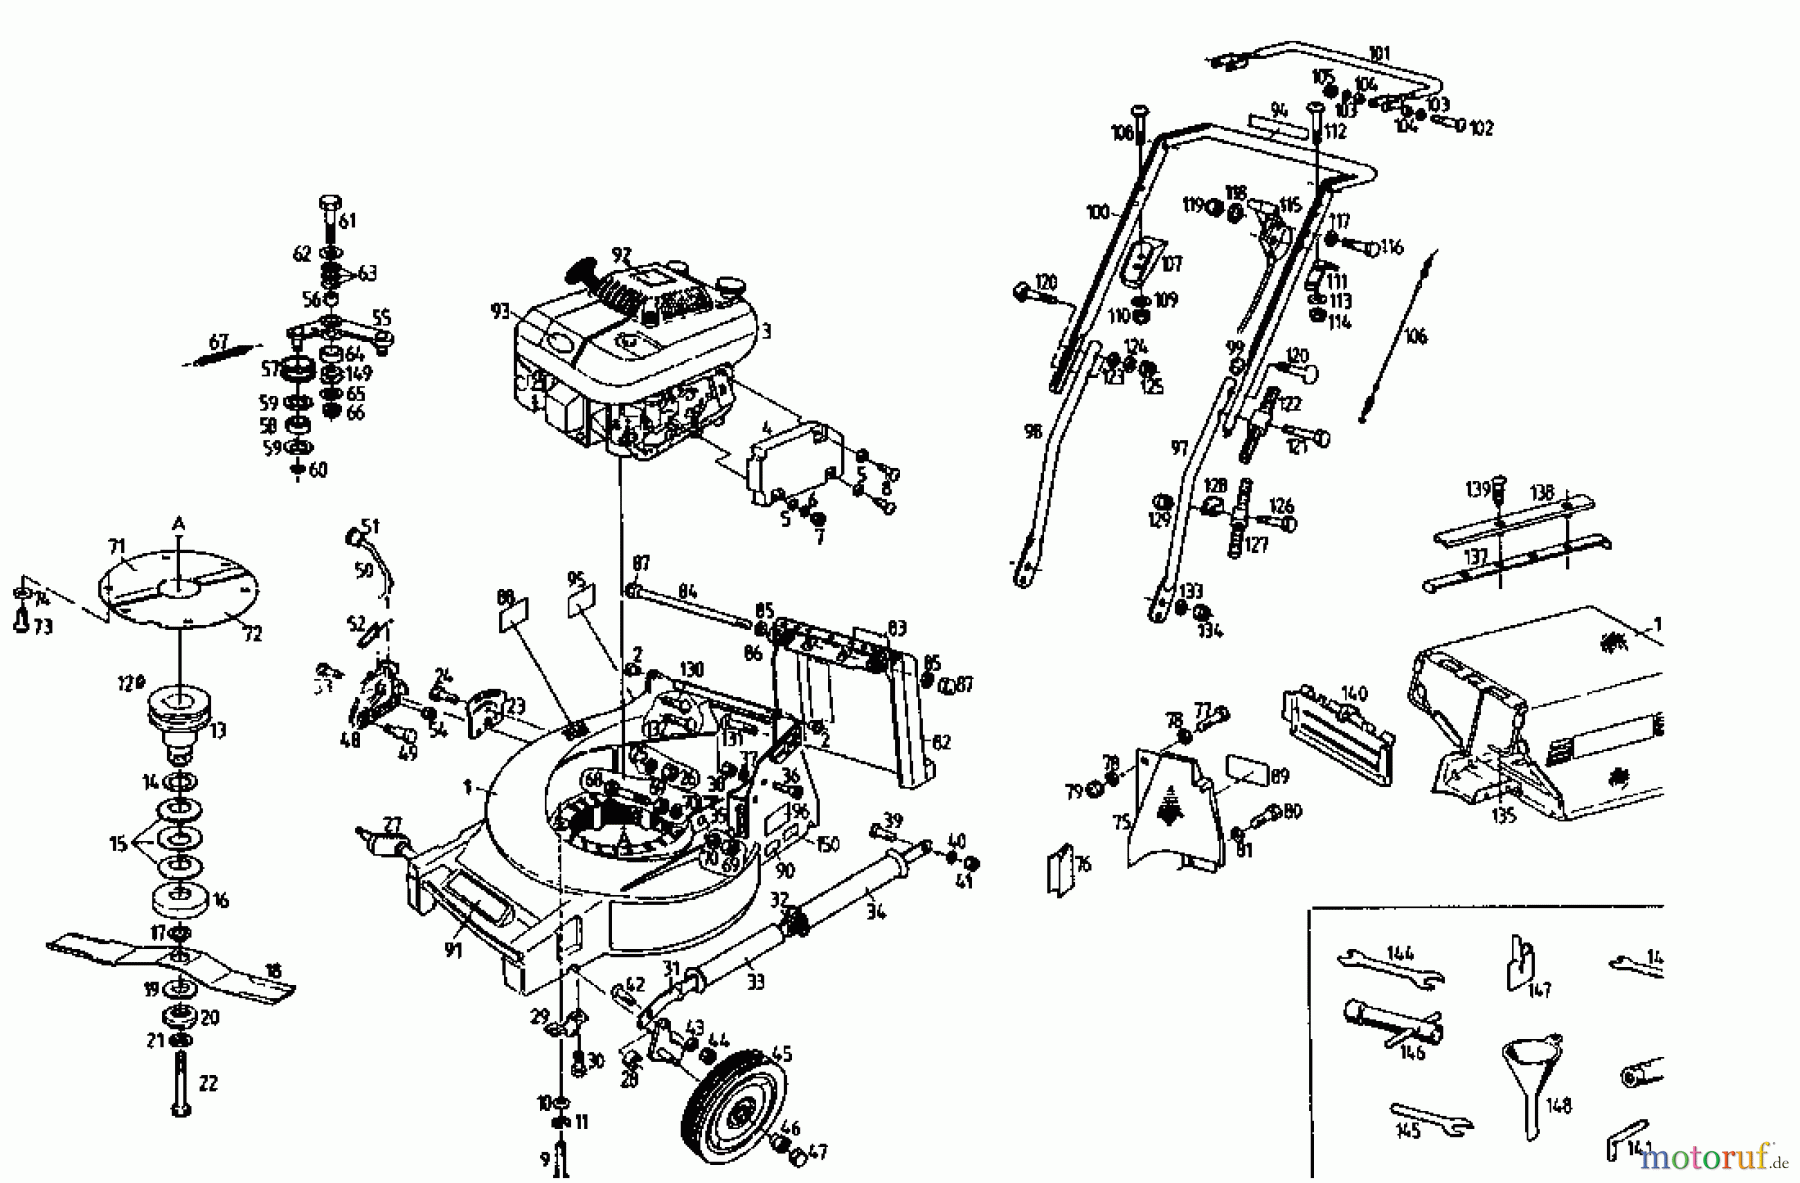  Gutbrod Tondeuse thermique tractée MH 534 PR 04017.03  (1993) Machine de base